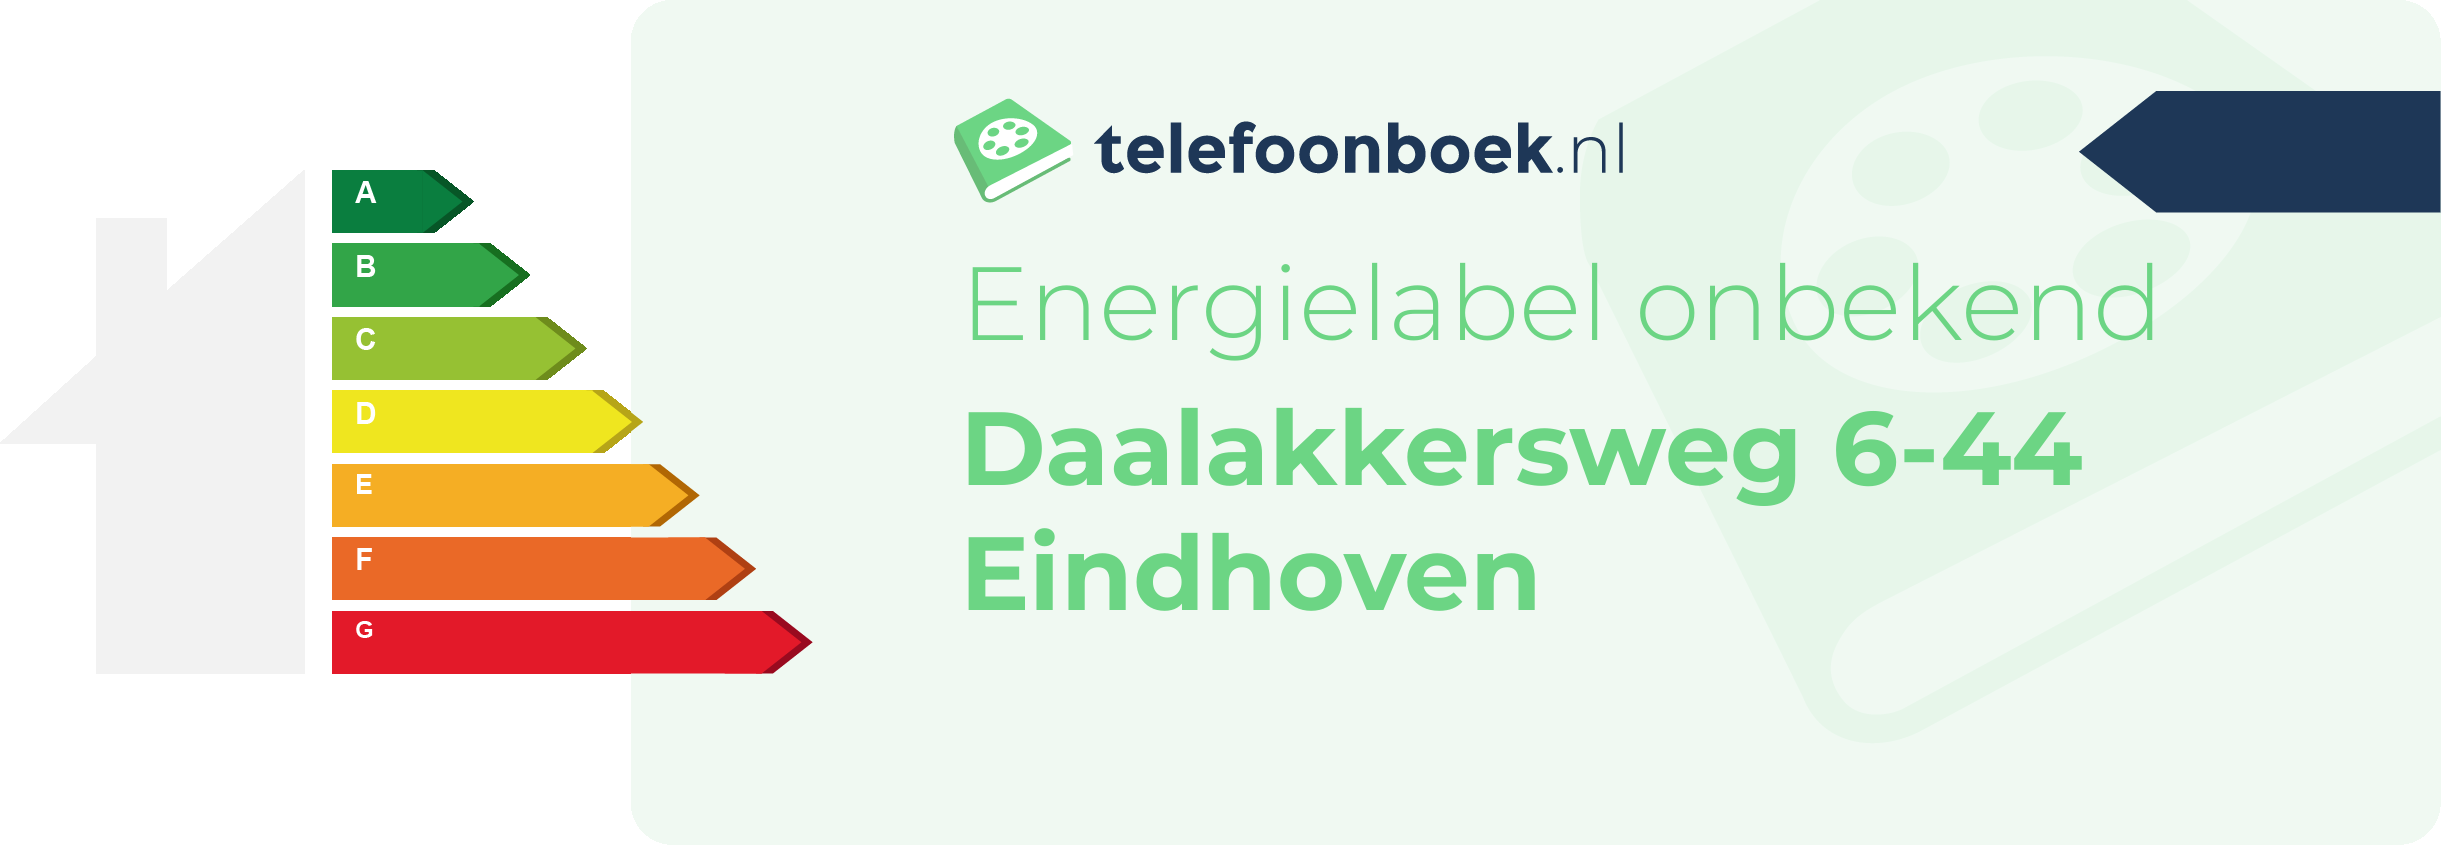 Energielabel Daalakkersweg 6-44 Eindhoven